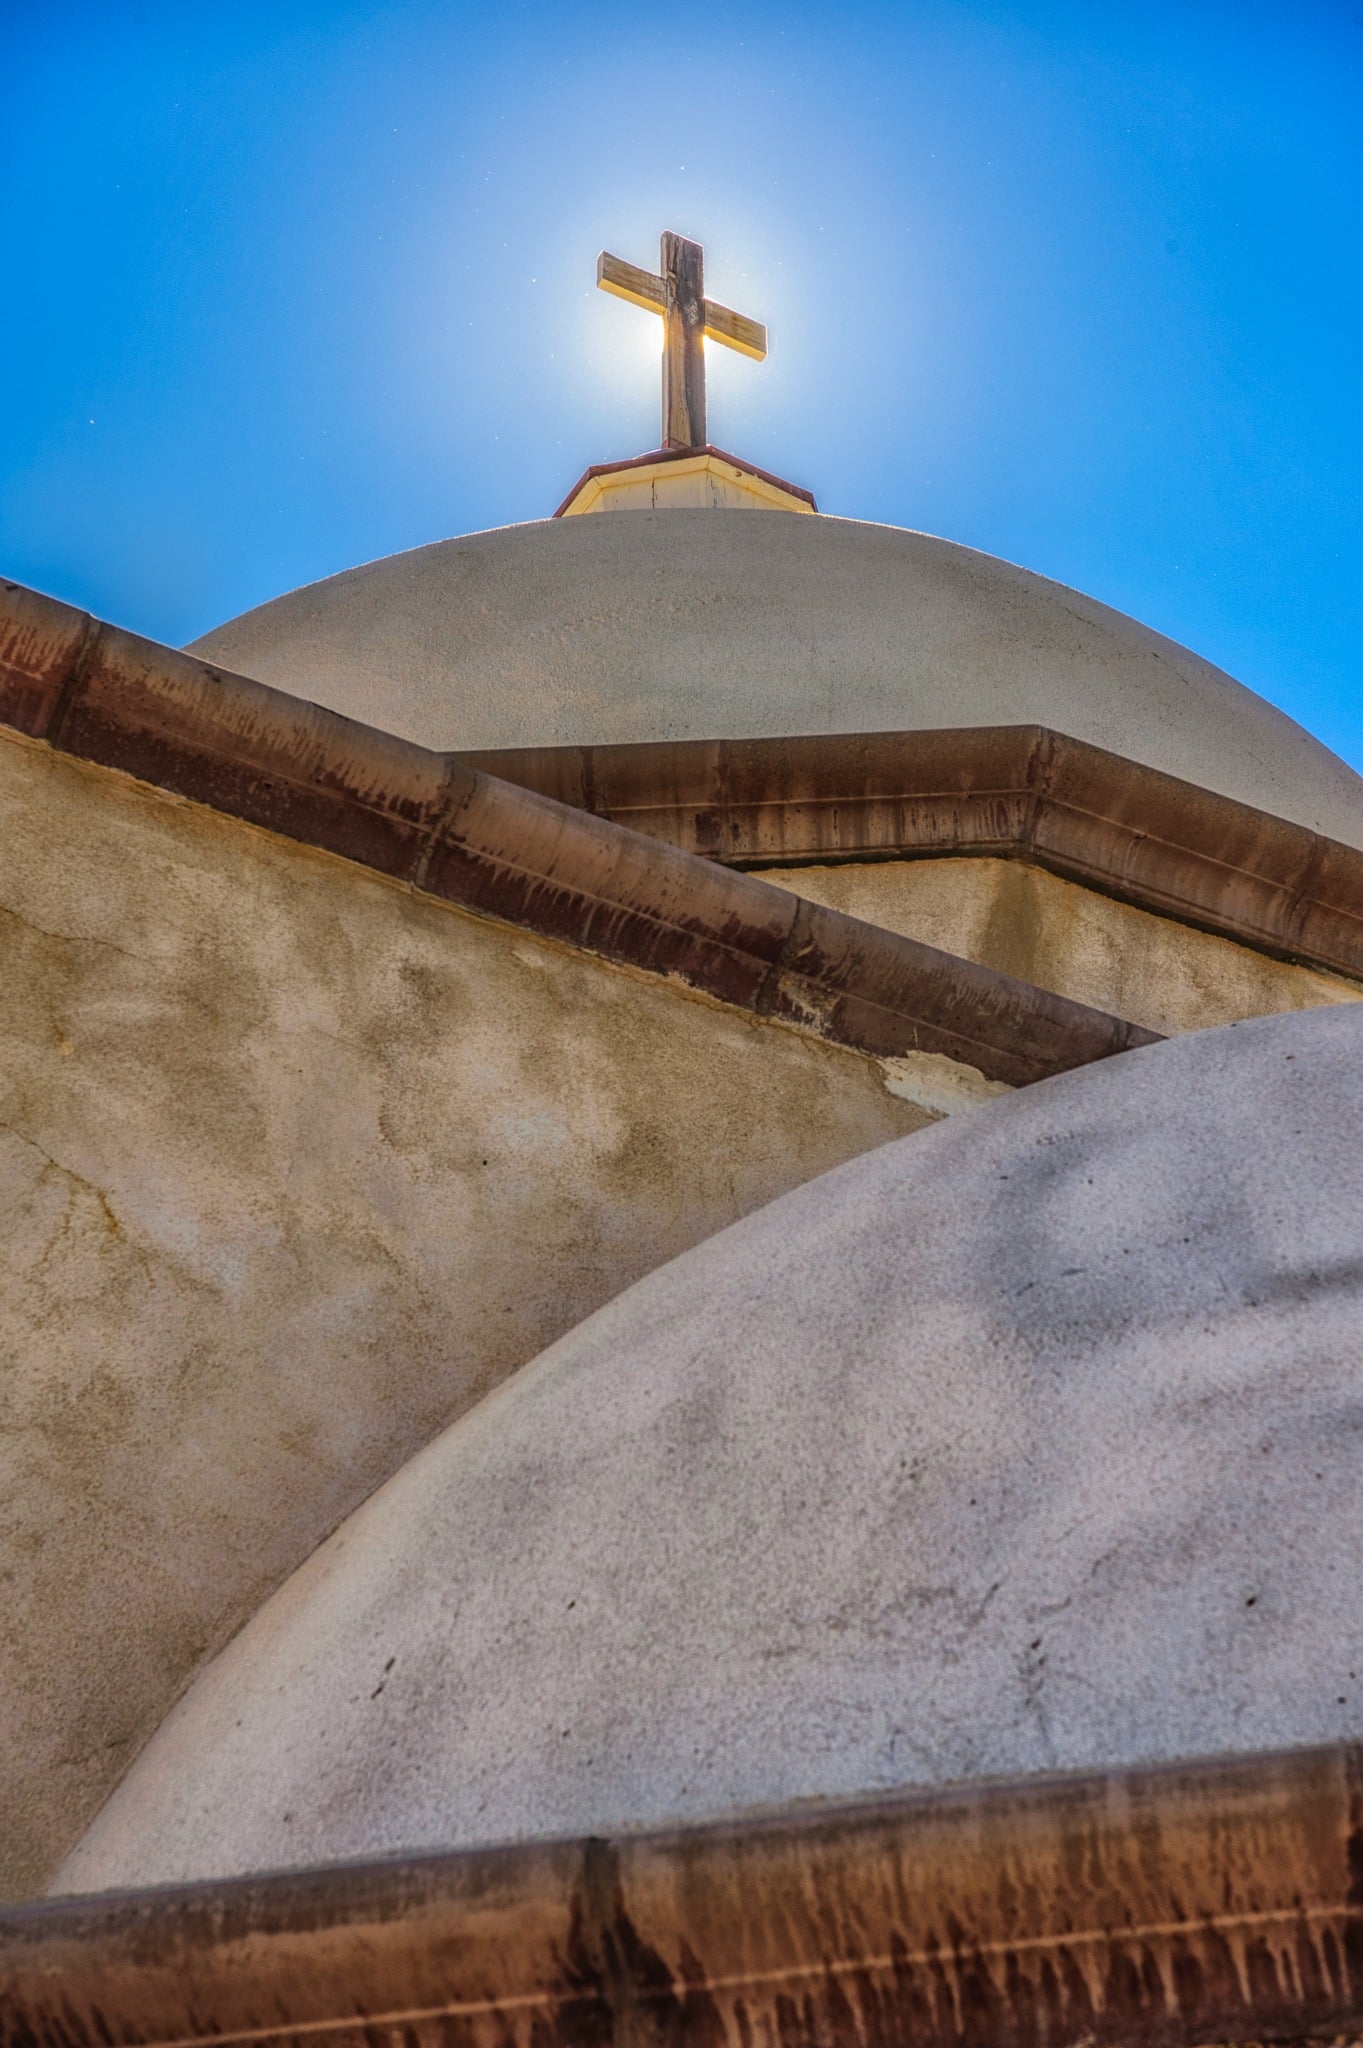 The sun silhouettes the wooden cross on top of the dome of La Capilla de Todos Los Santos, located above San Luis, Colorado, on La Mesa de la Piedad y de la Misericordia.